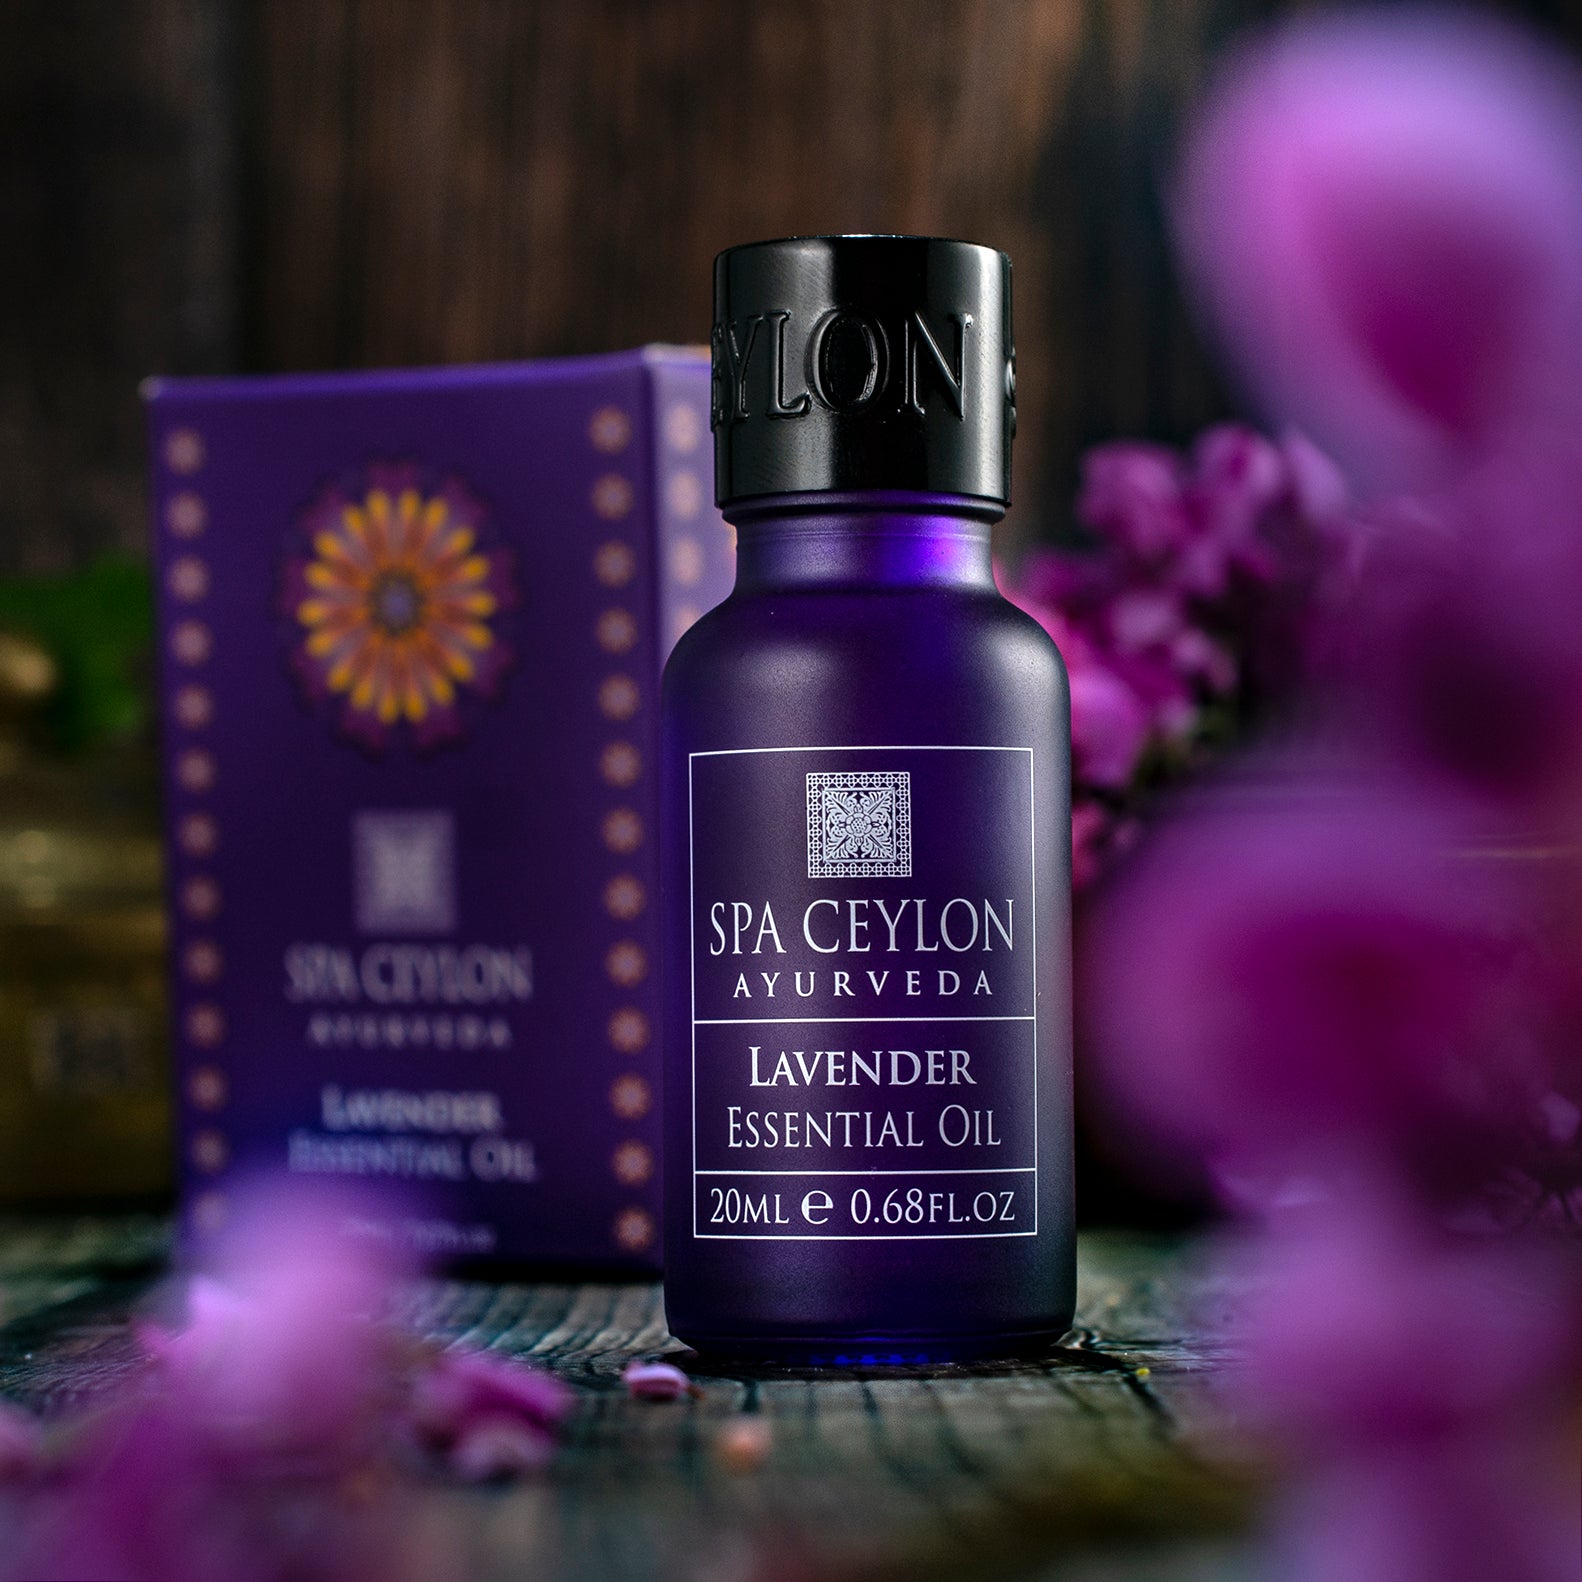 Lavender - Essential Oil